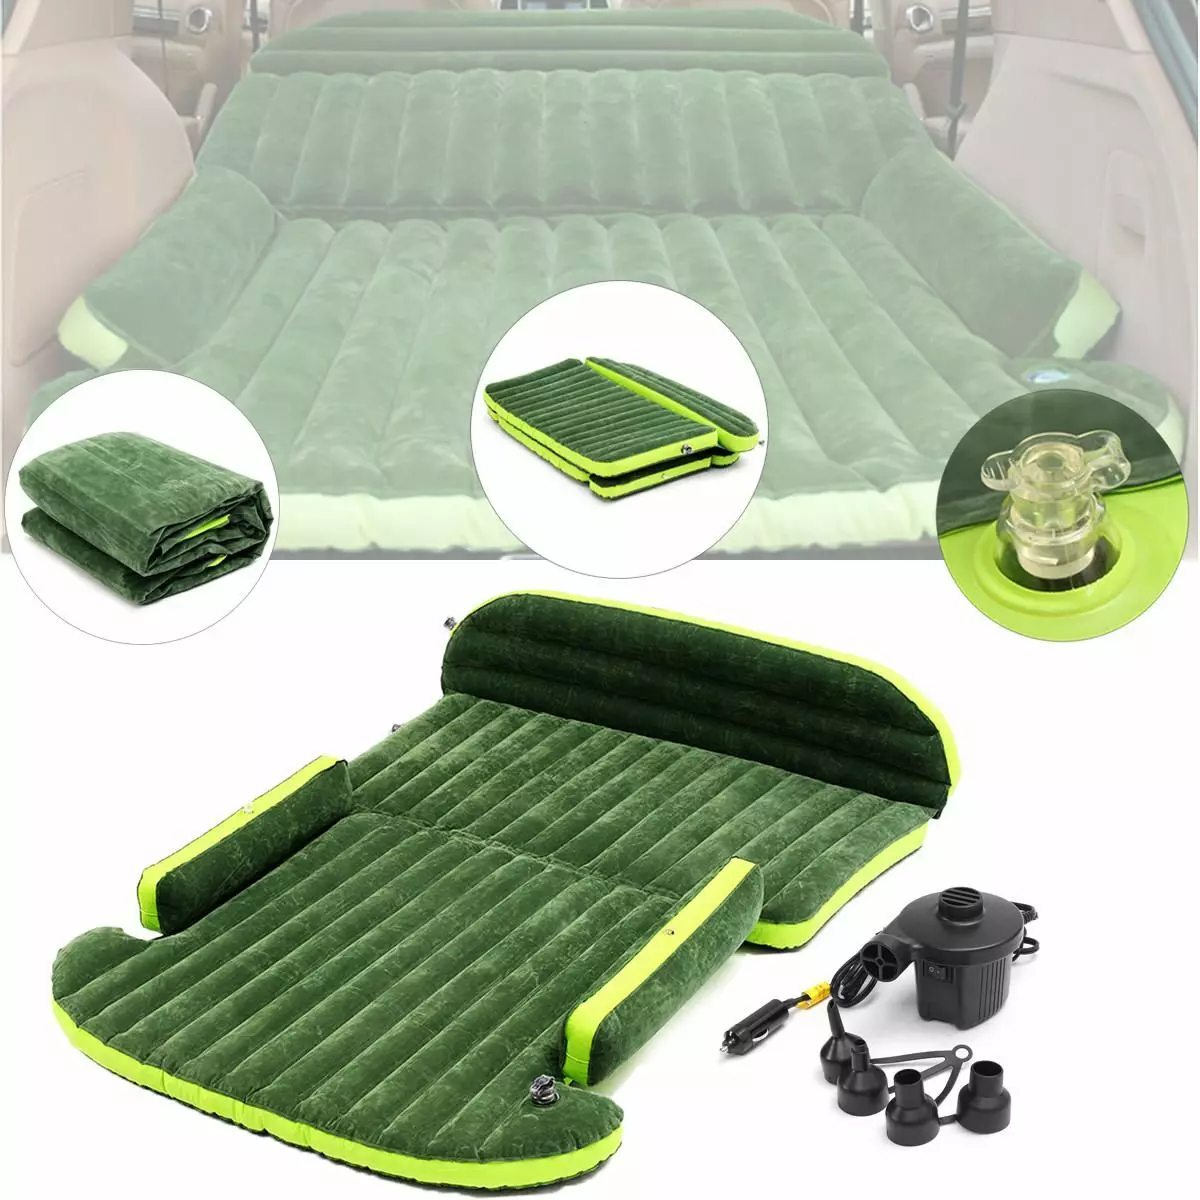 Matrace v autě: modely na zadním sedadle a v kufru pro cestování, vyhřívané a pro děti, ortopedické a další možnosti spánku 20819_19